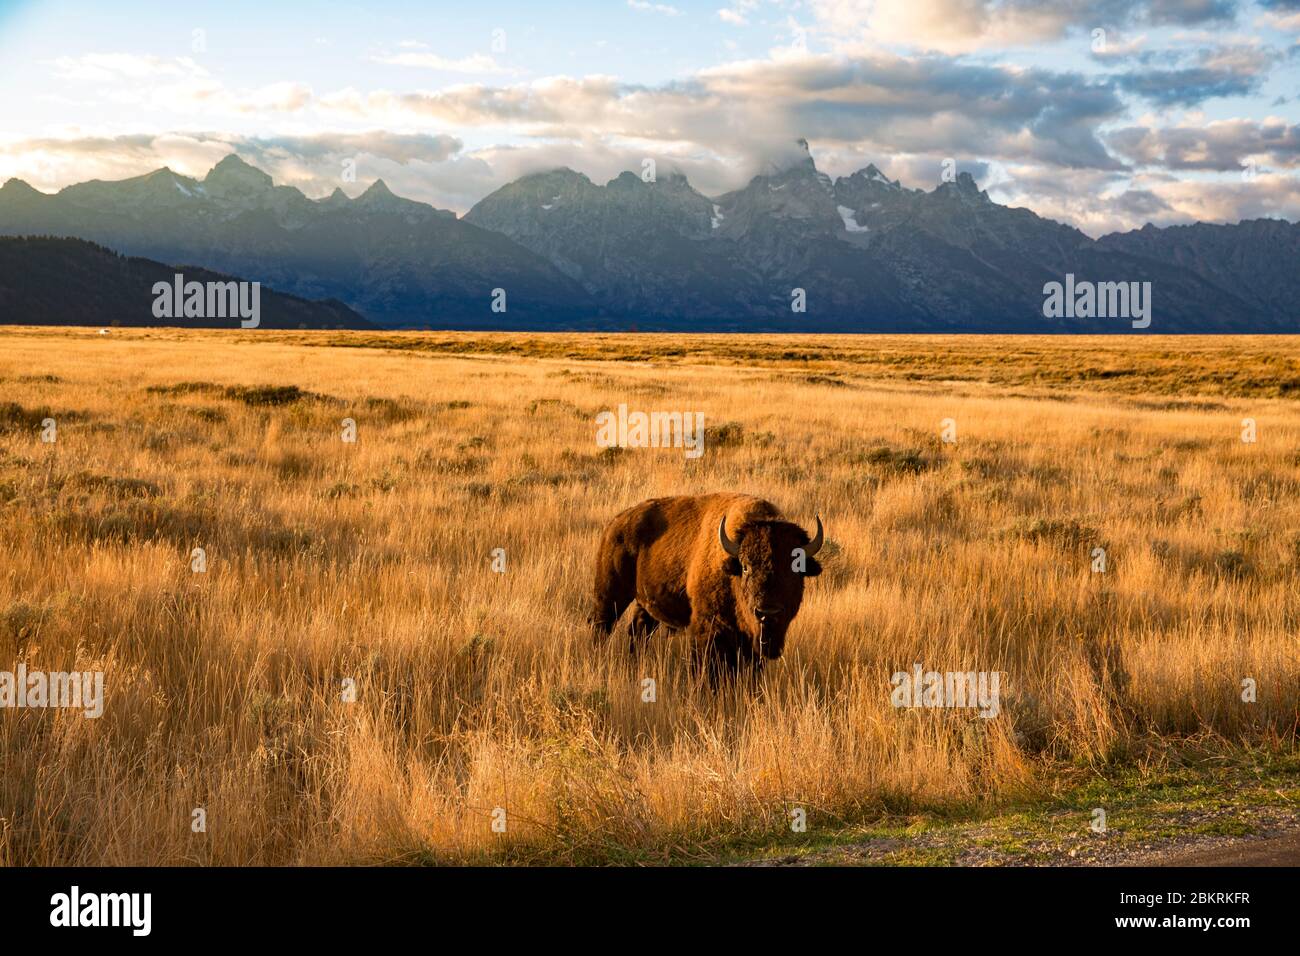 USA, Wyoming, Yellowstone National Park, von der UNESCO zum Weltkulturerbe erklärt, Bison bei Sonnenuntergang Stockfoto